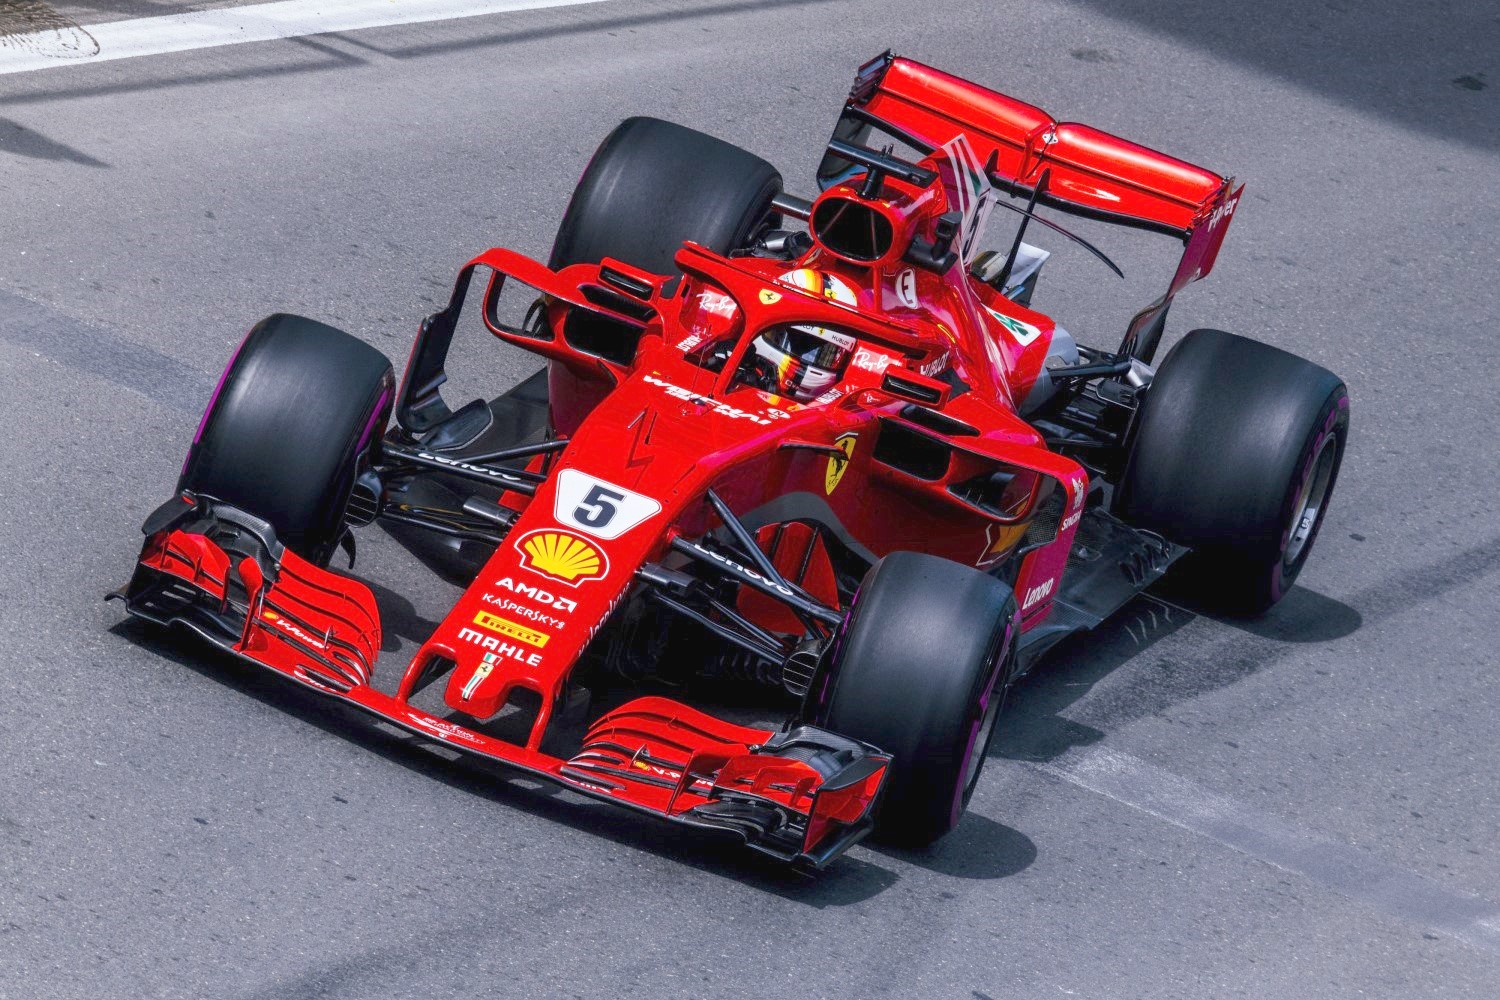 Vettel's Ferrari